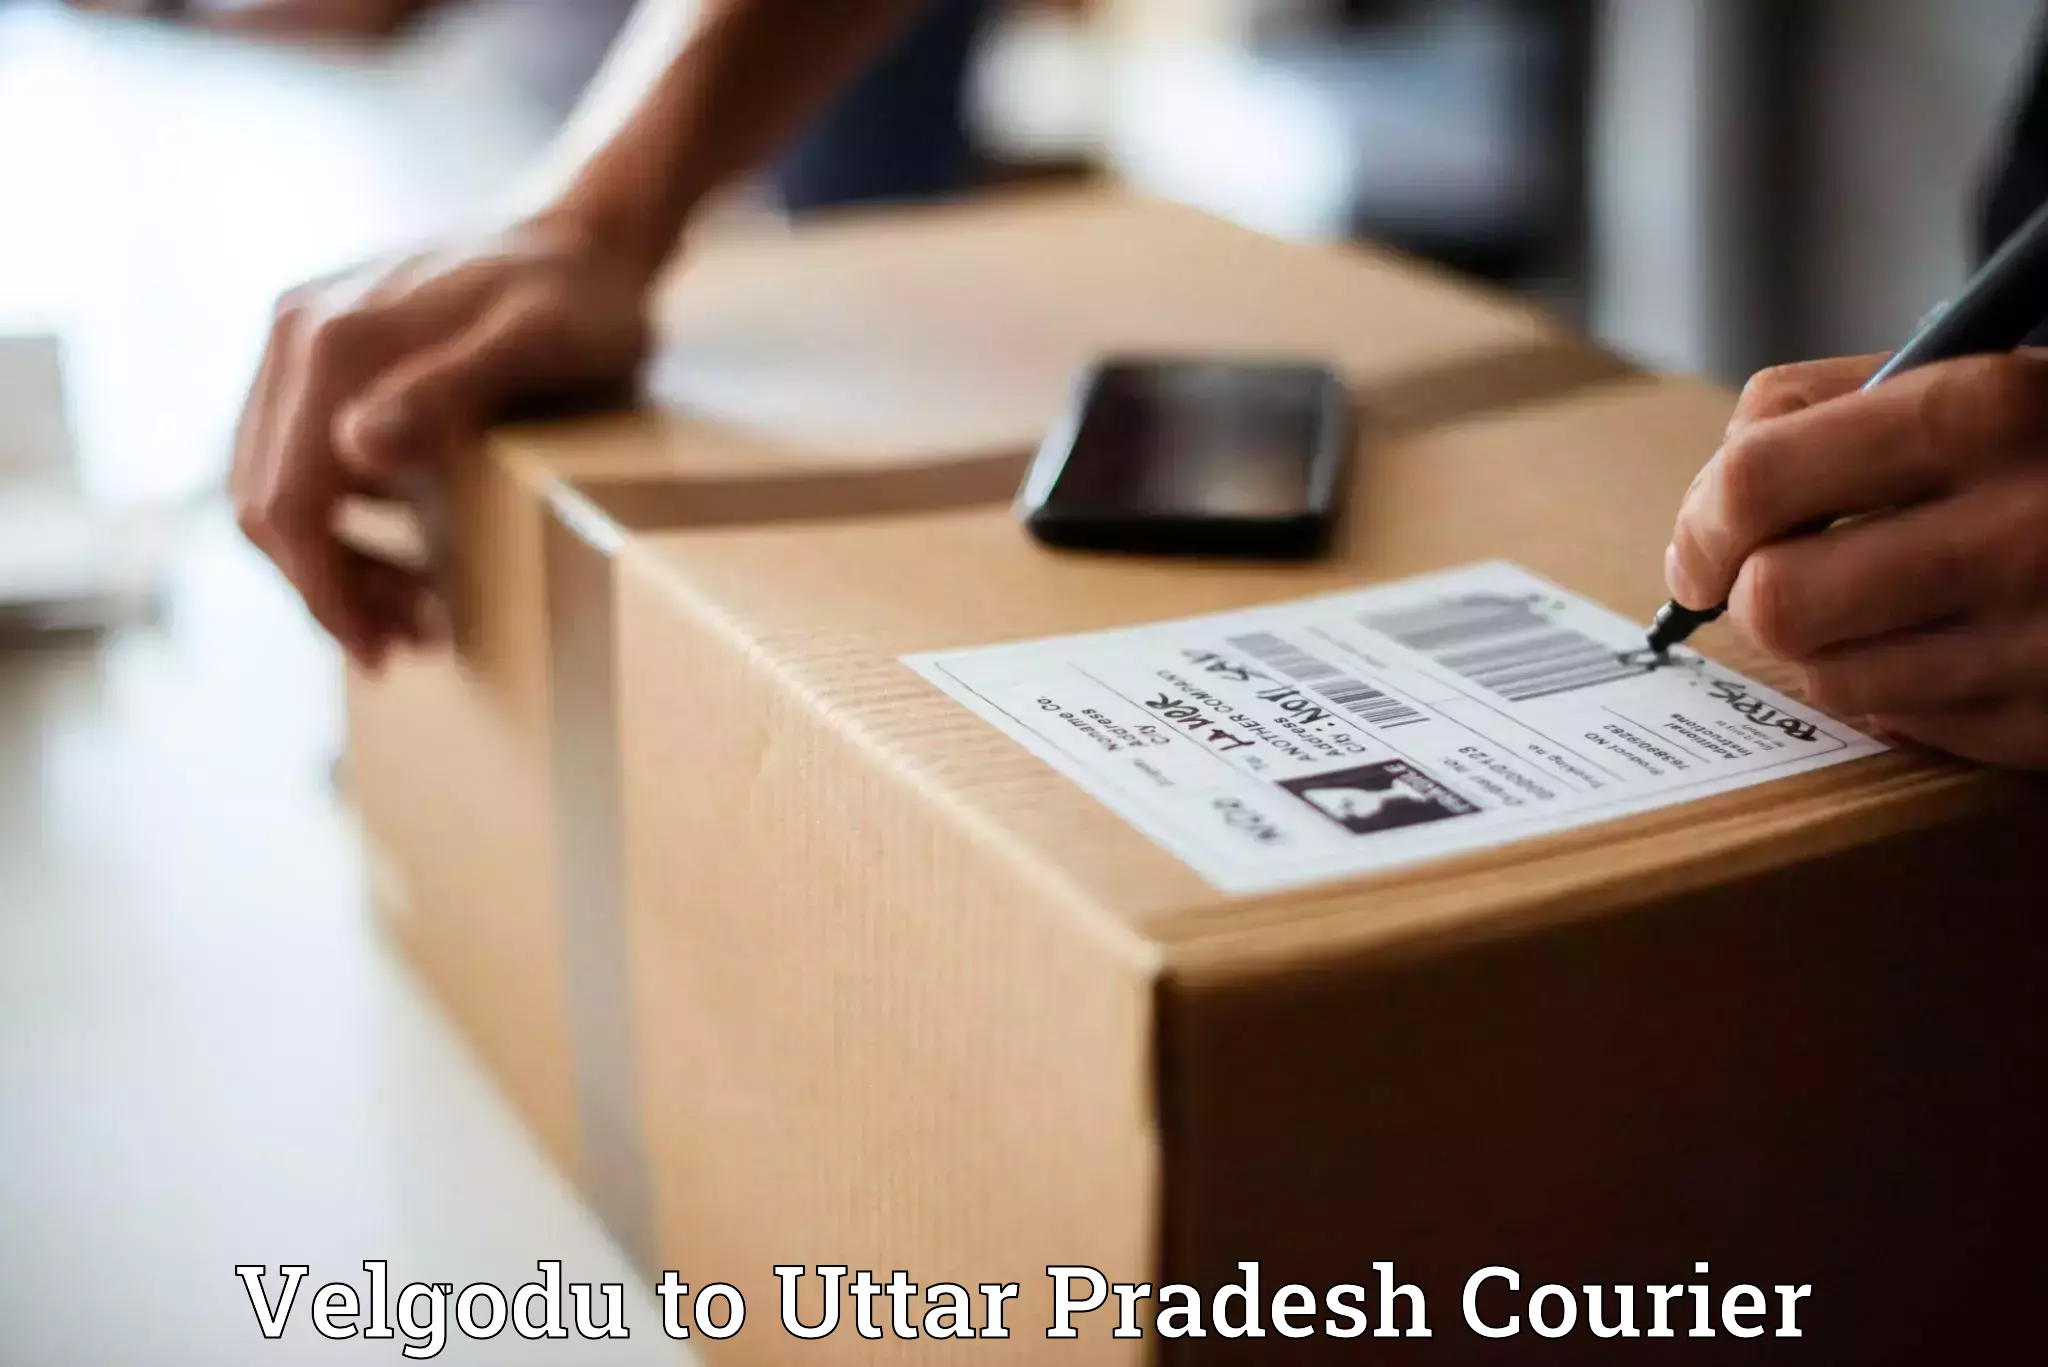 Seamless shipping service Velgodu to Uttar Pradesh